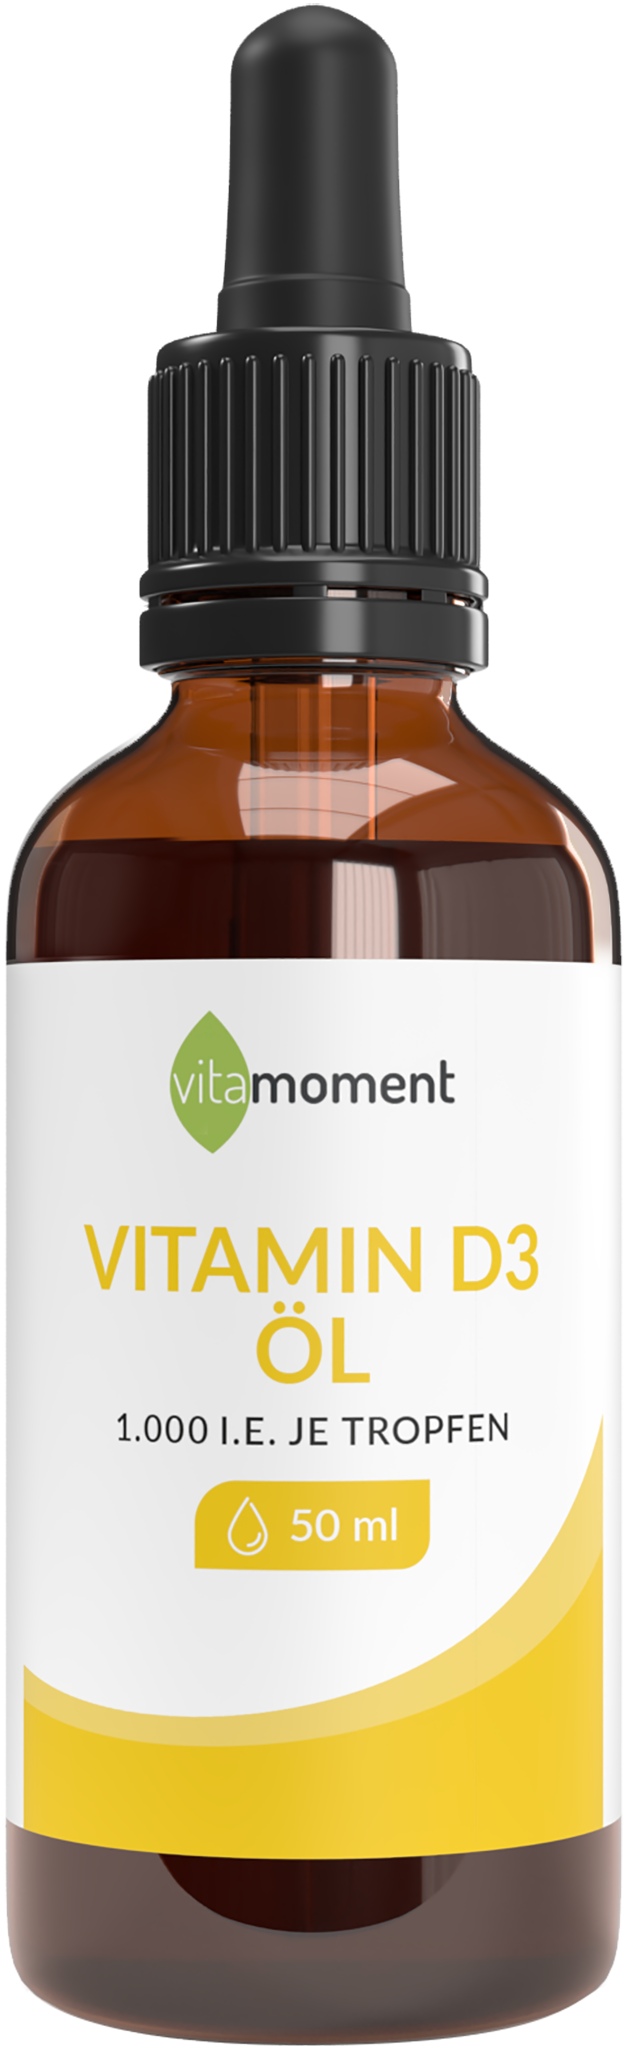 Vitamin D3 (Aktion) - VitaMoment Produkt